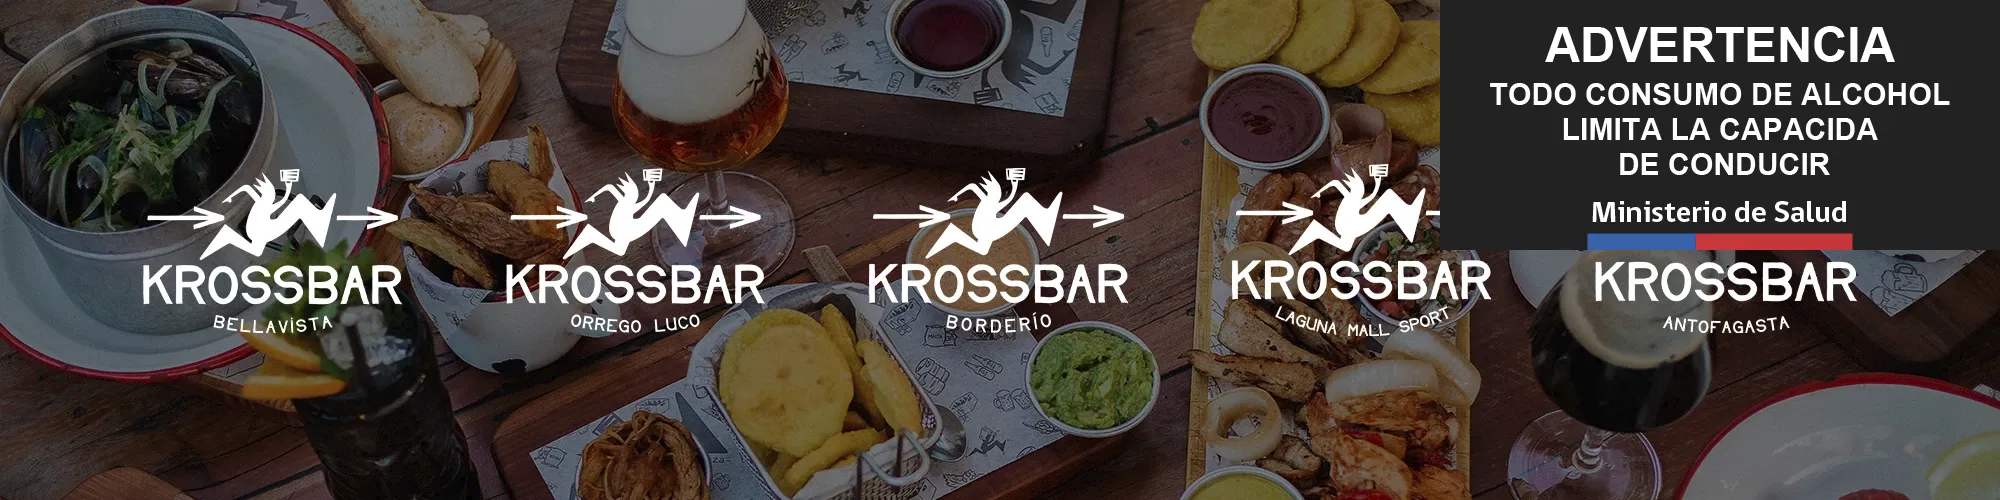 Krossbar - Cervecerias Kross